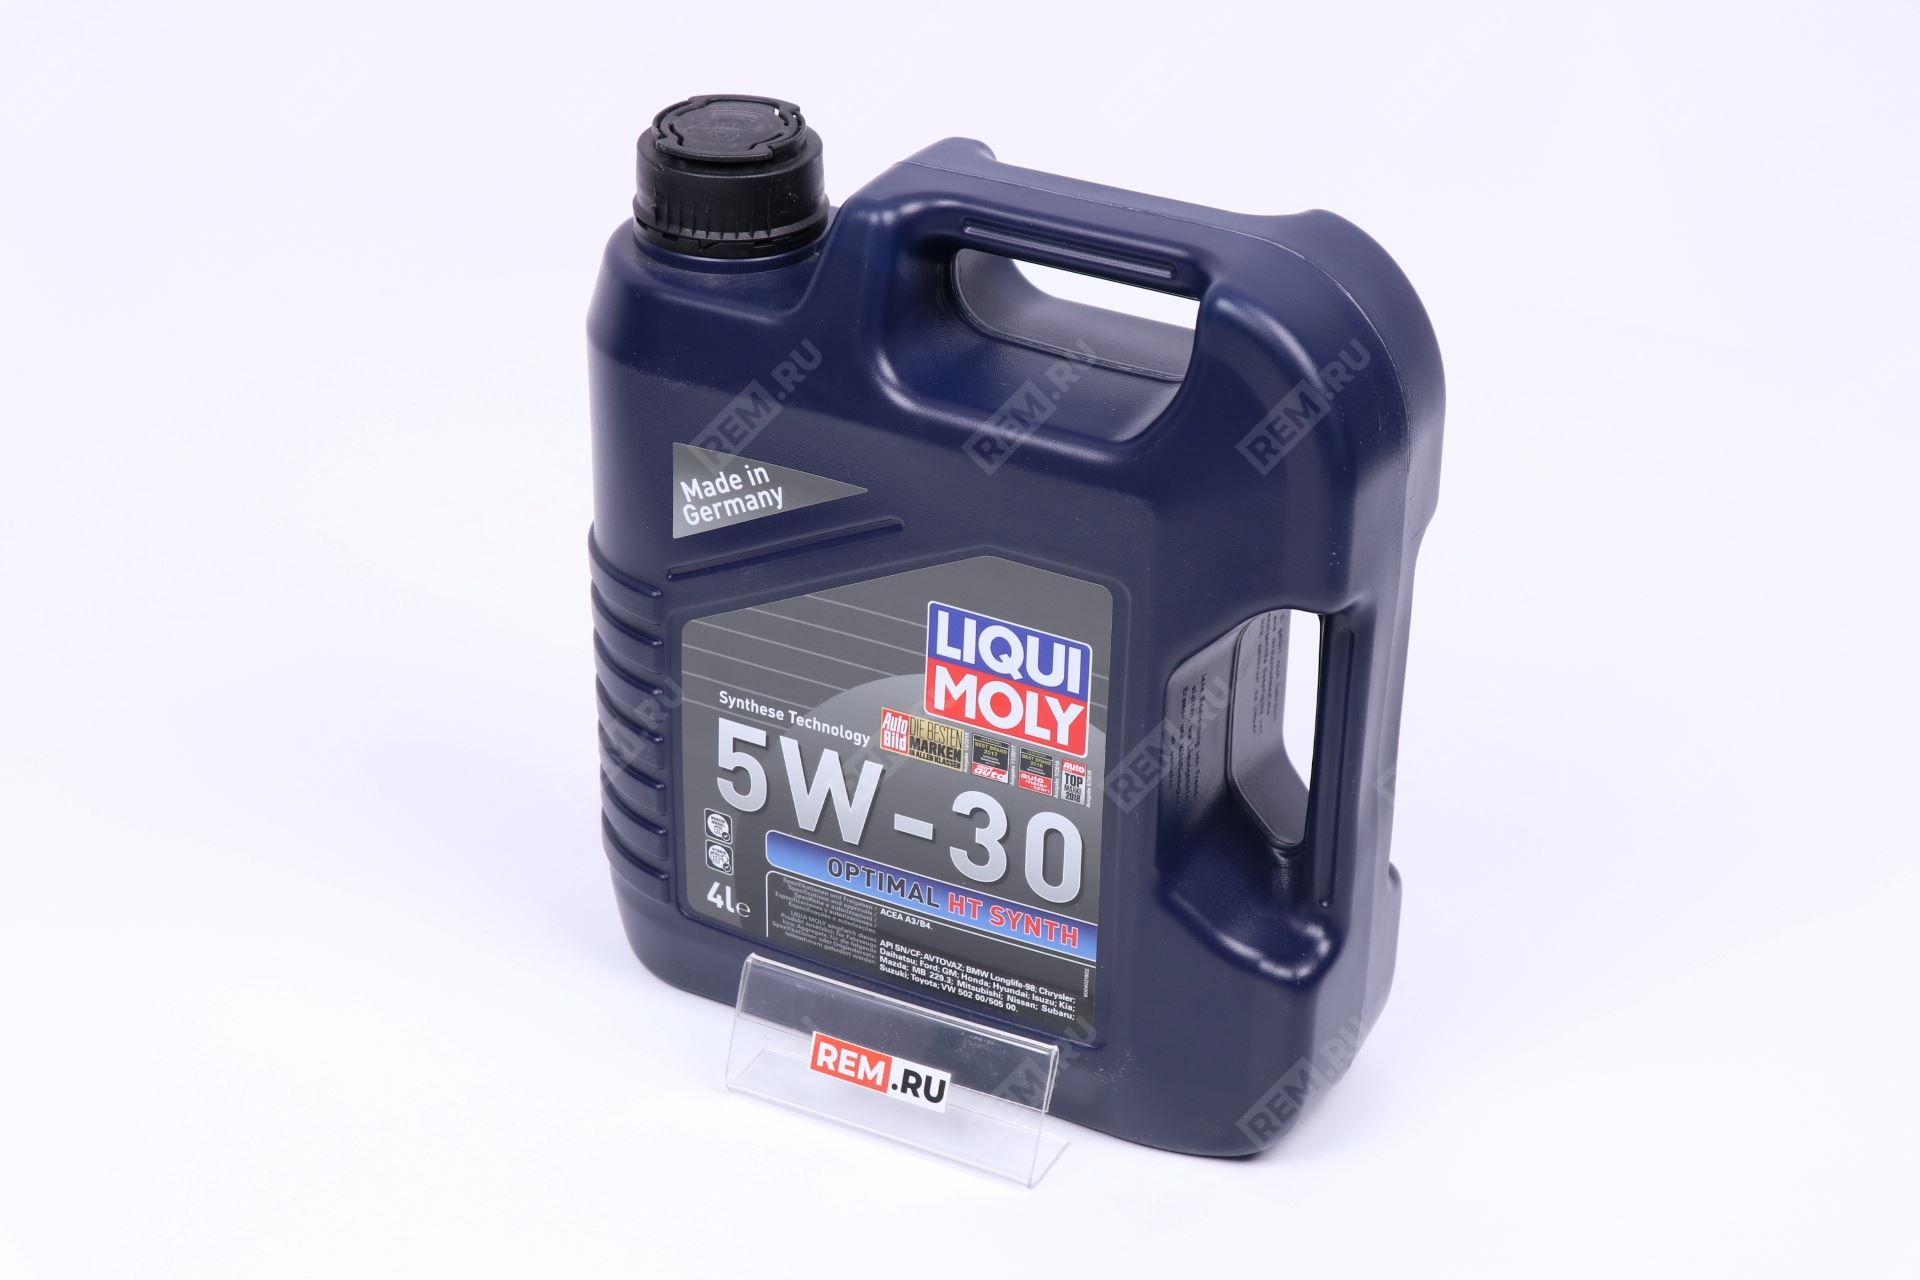  990LM39001000  масло моторное suzuki (liqui moly) 5w-30, 4л (фото 1)